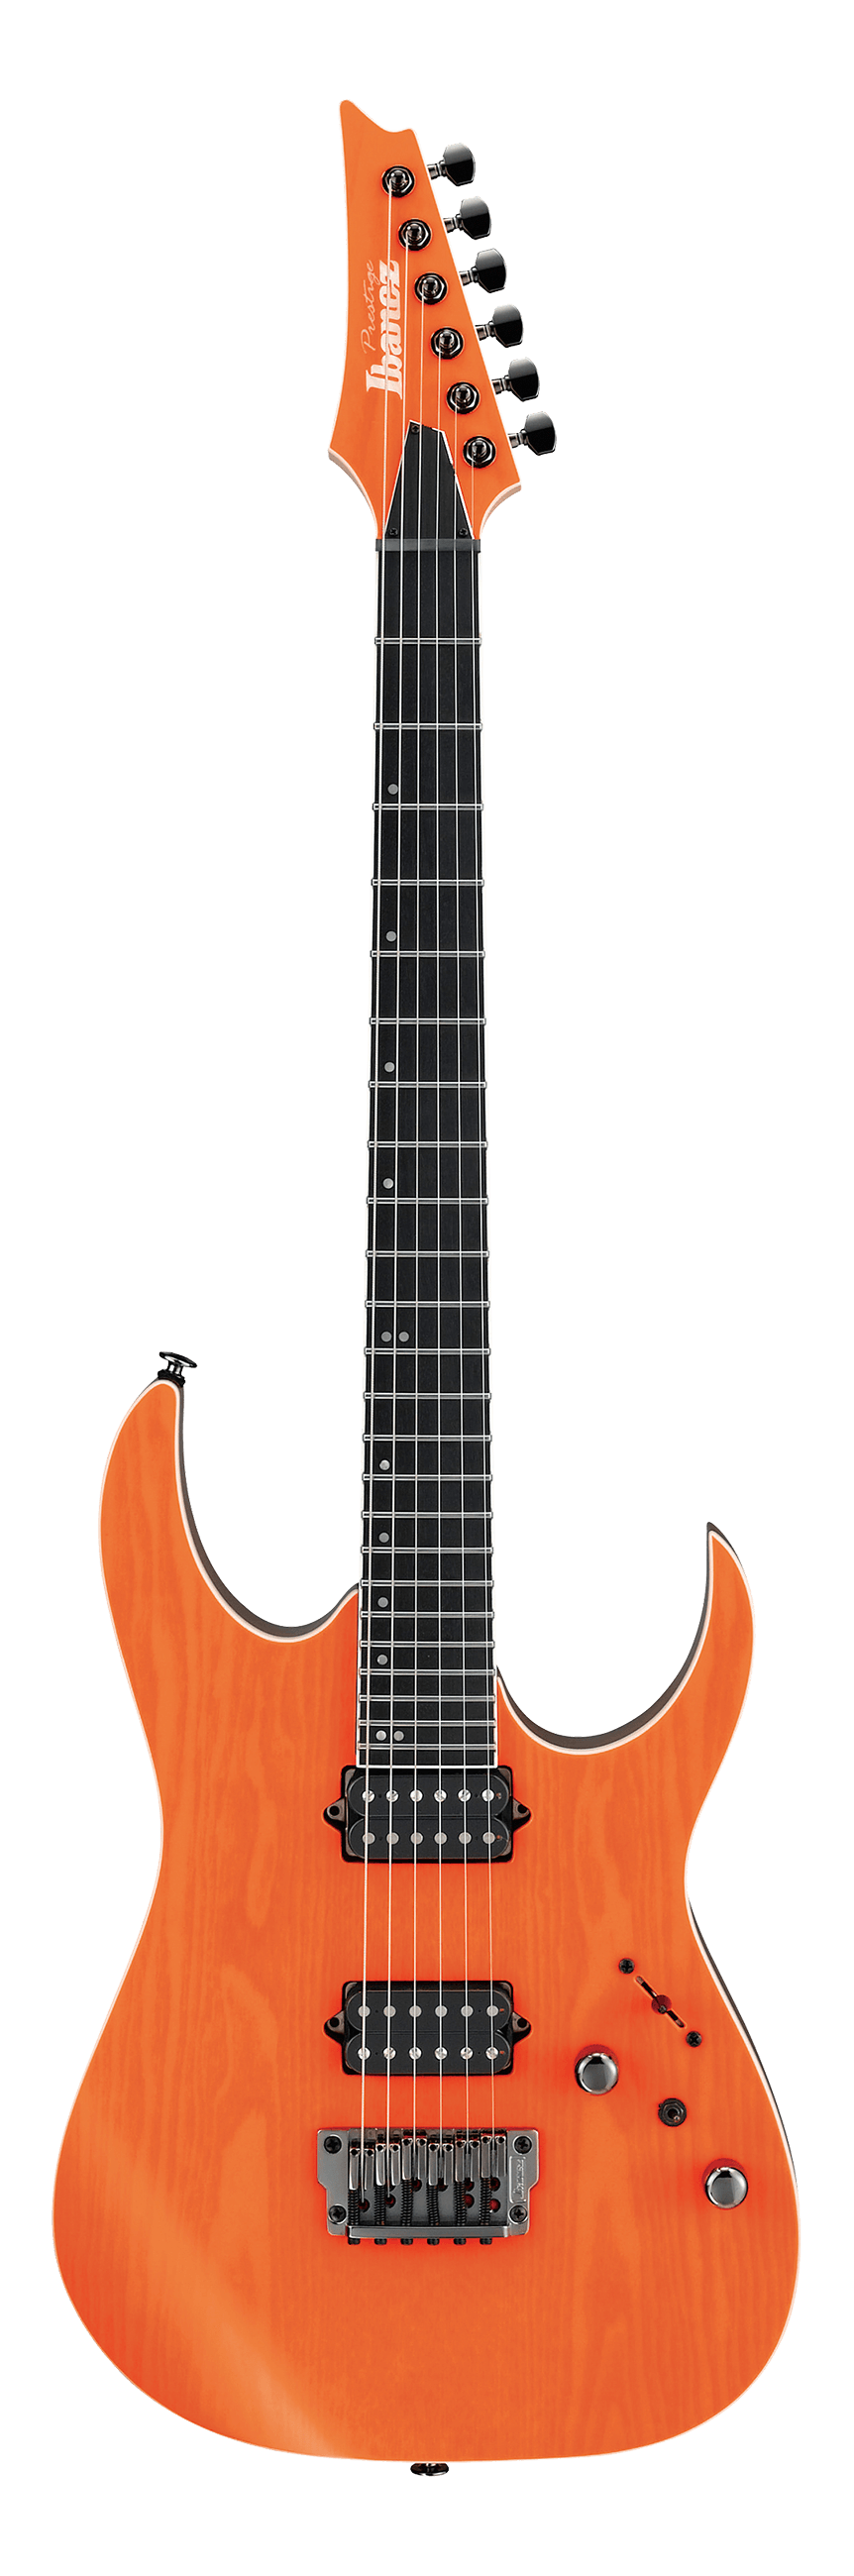 IBANEZ RG Prestige Series RGR5221 Japan Made Electric Guitar (TFR : Transparent Fluorescent Orange)